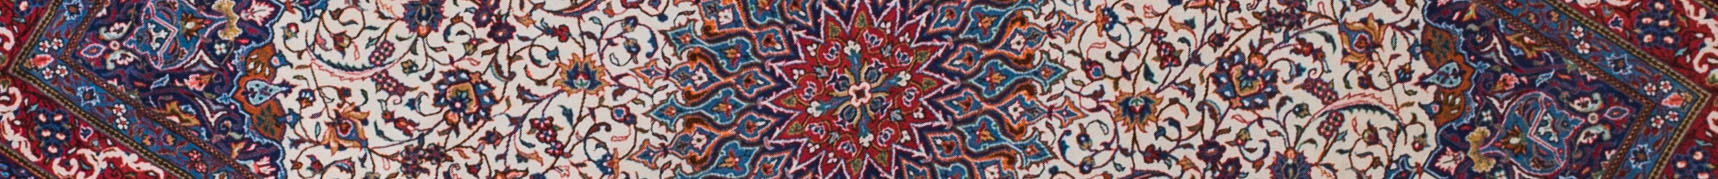 Sarouq Persian Carpet Rug N1Carpet Canada Montreal Tapis Persan 1900